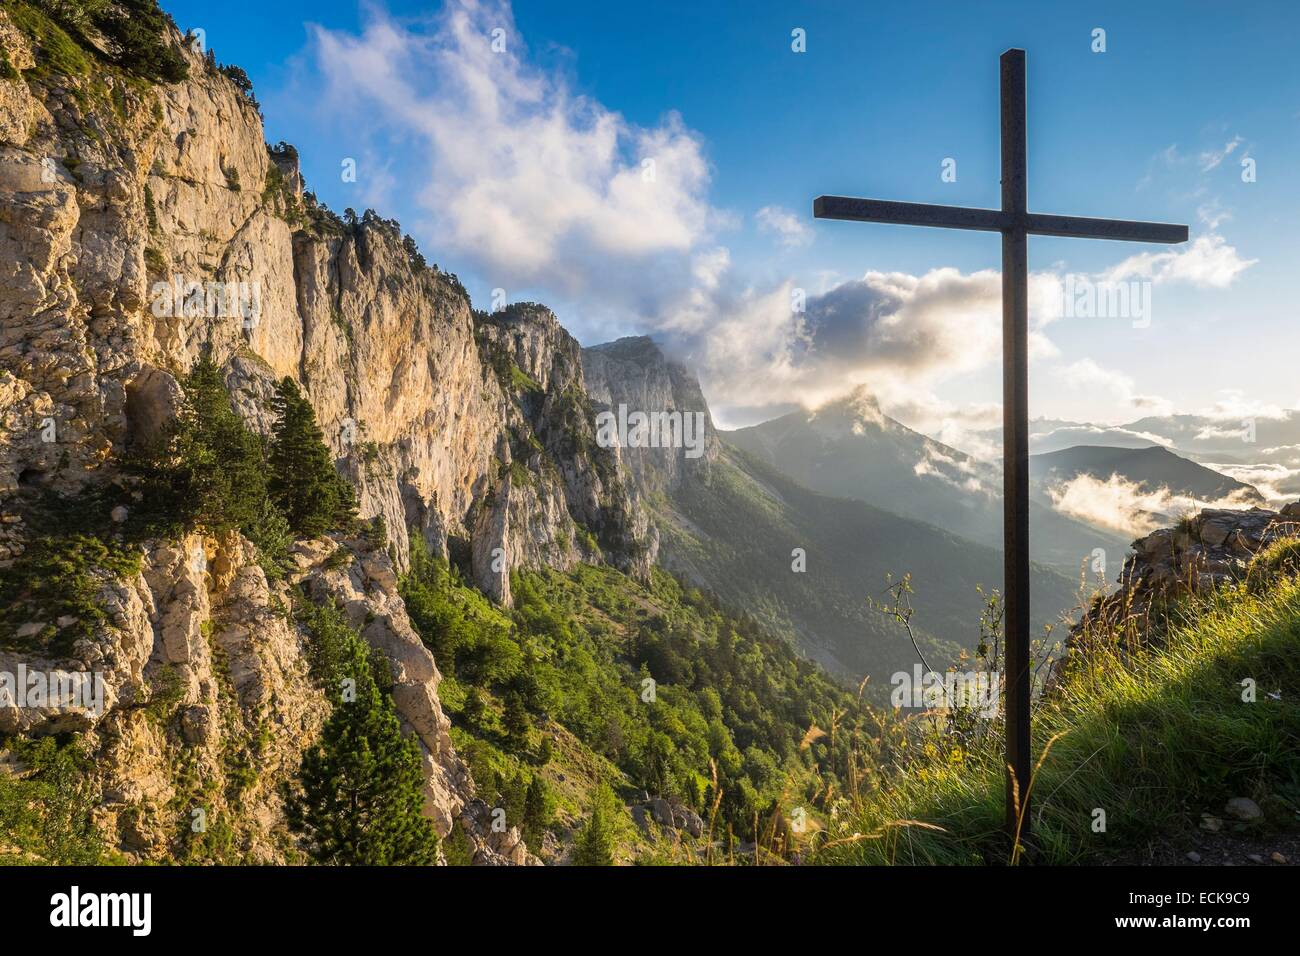 France, Isère, parc naturel régional du Vercors, vue panoramique depuis le pas de l'aiguille (alt : 1622m) sur le Vercors Highlands Banque D'Images